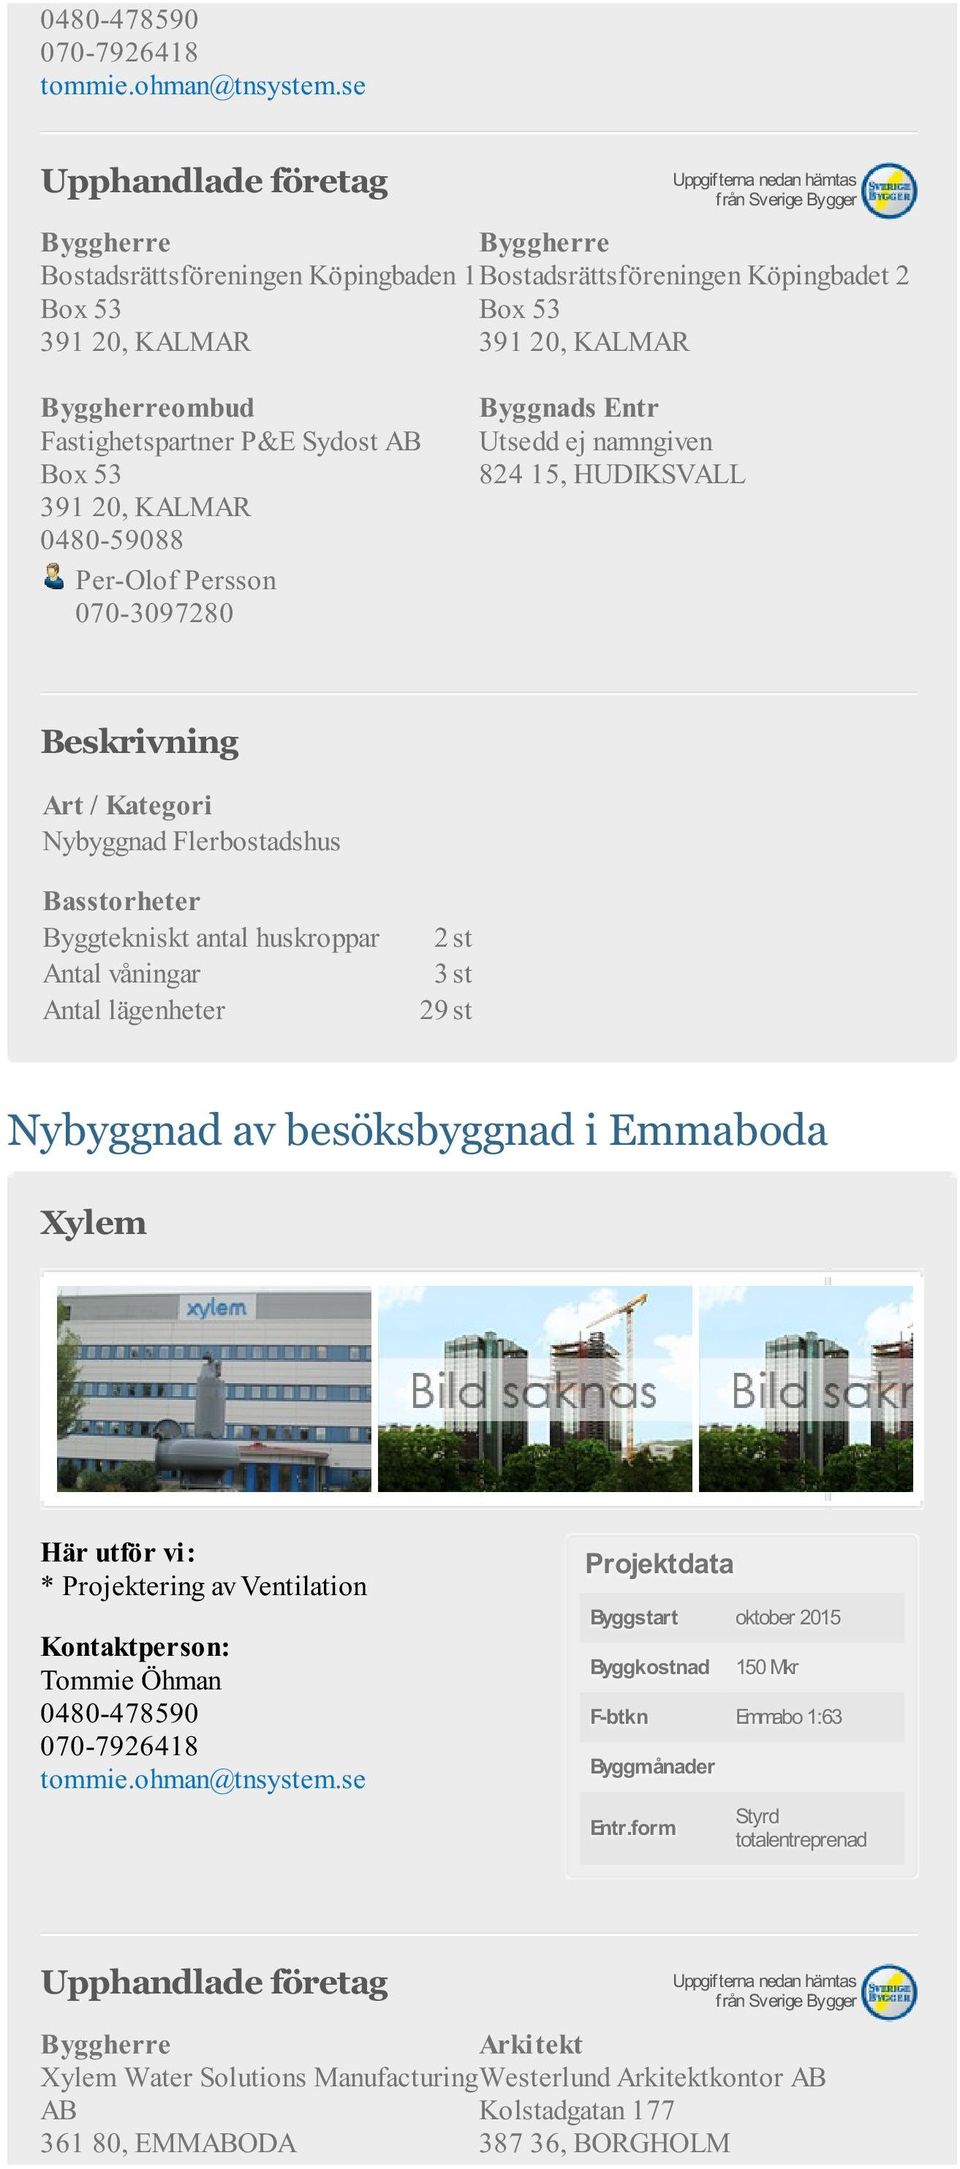 våningar 3 st Antal lägenheter 29 st Nybyggnad av besöksbyggnad i Emmaboda Xylem * Projektering av Ventilation Byggstart oktober 2015 Byggkostnad 150 Mkr F-btkn